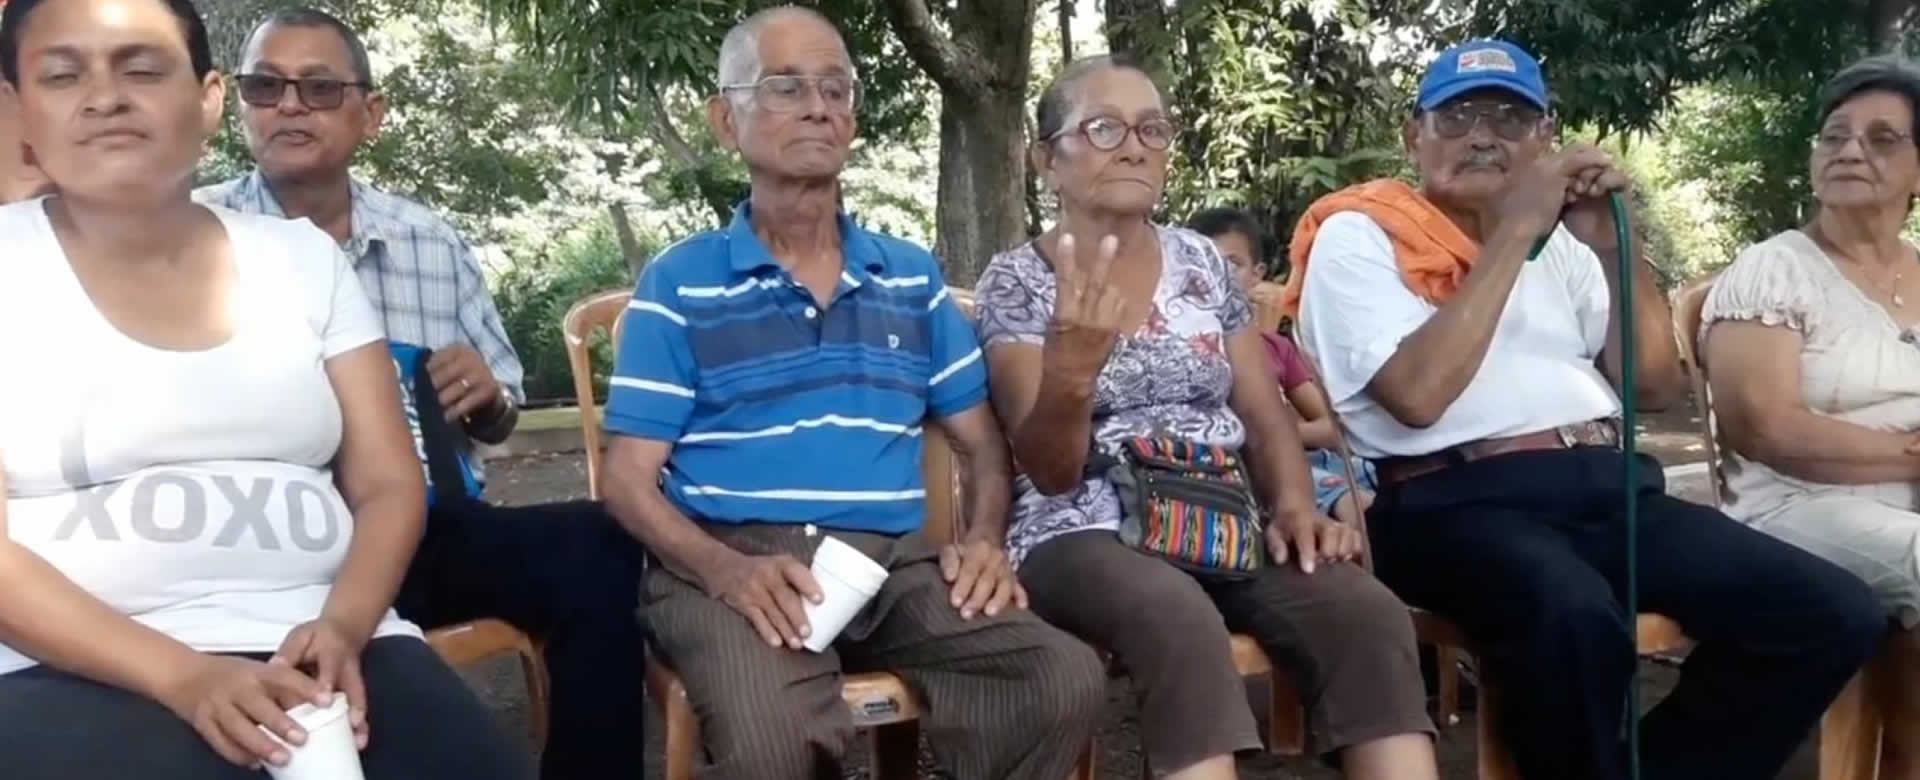 Adultos mayores de Rivas celebran sus años dorados